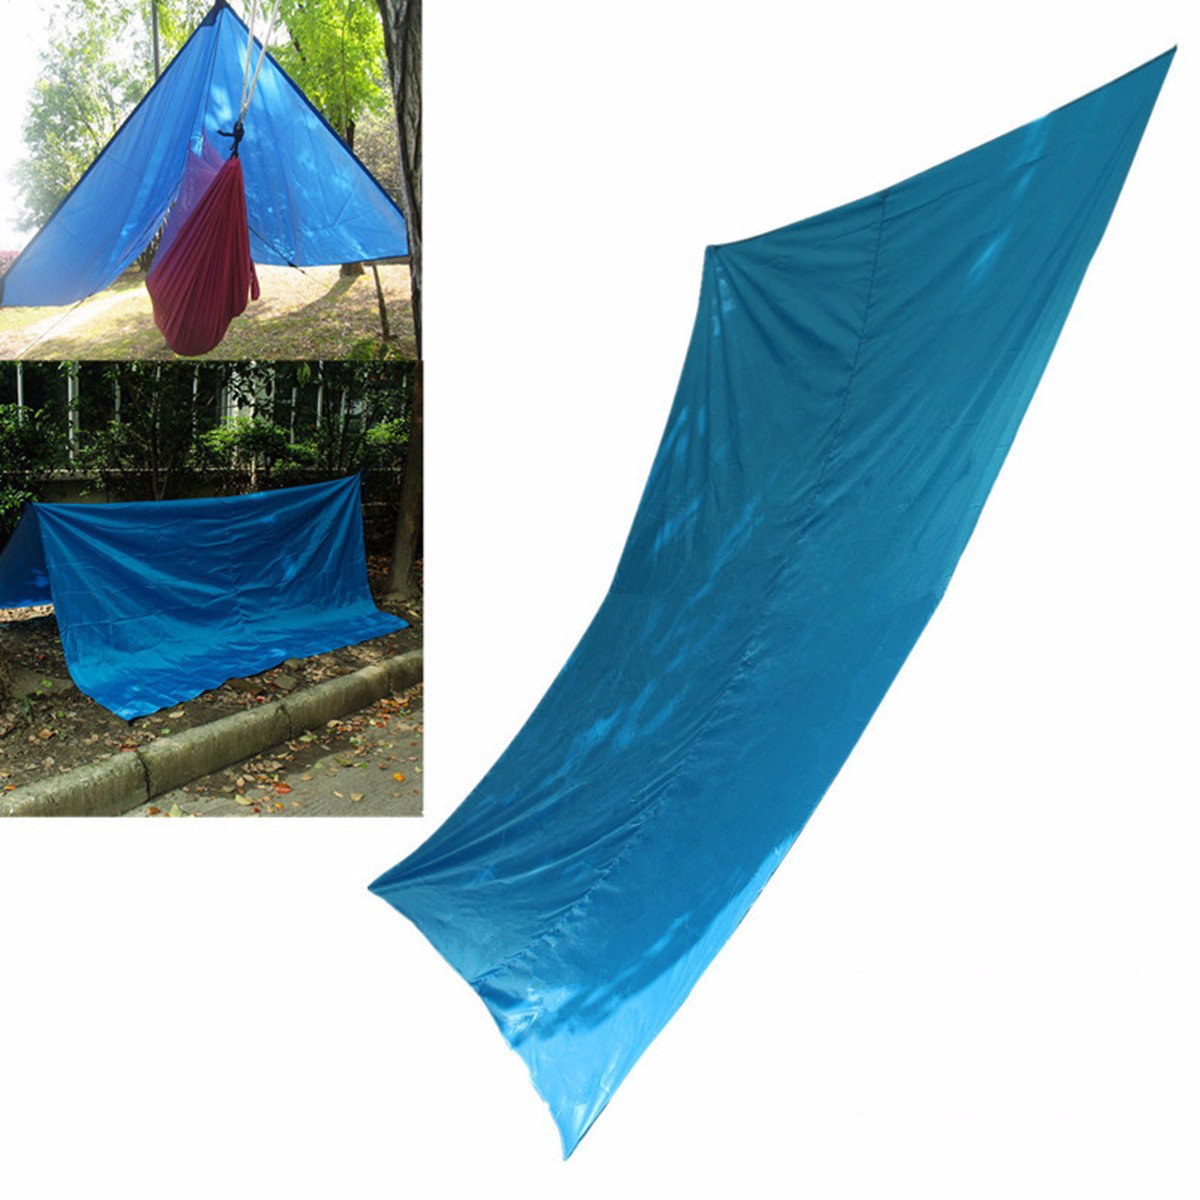 Rede Havelock para exterior com toldo e tenda de sombra de 300x300 cm para proteção solar durante viagens, camping e caminhadas.